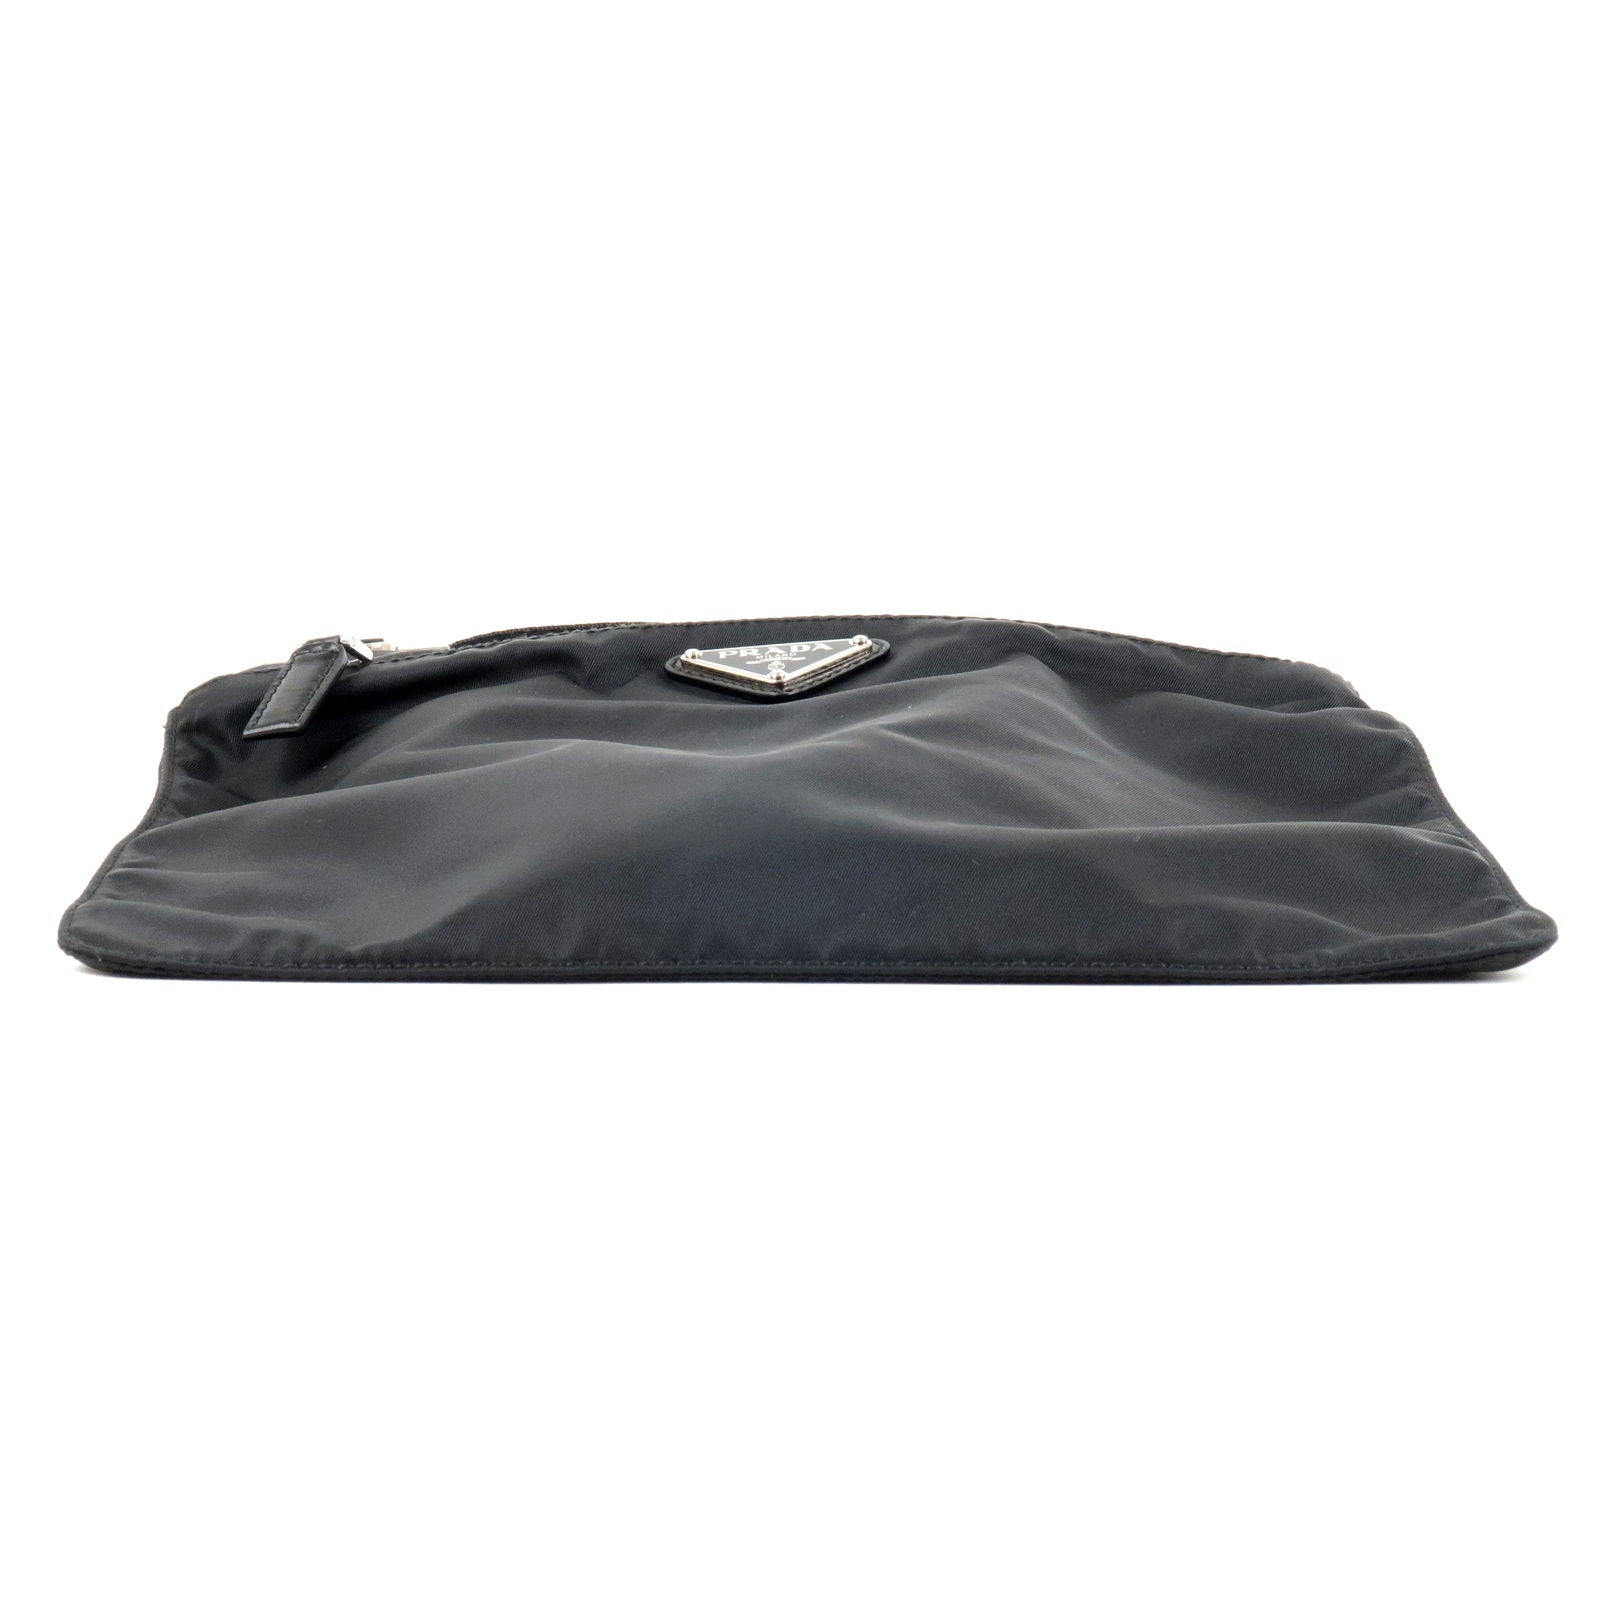 Prada PRADA Mini Boston Bag Handbag Nylon Triangle Logo Plate Nero Nero  Black